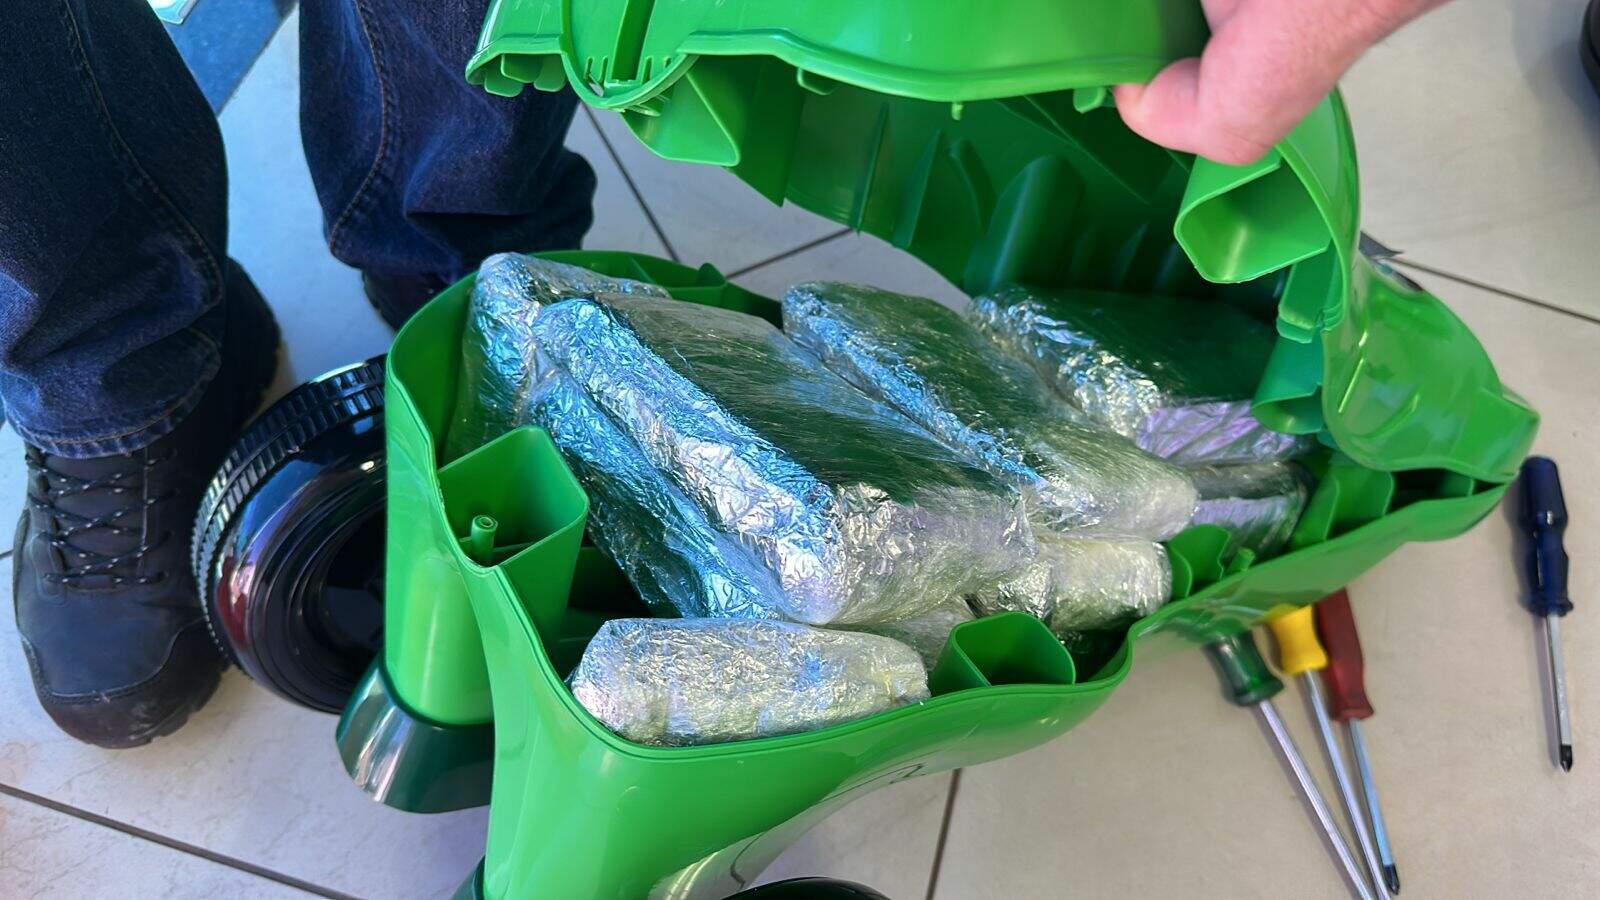 Traficante tenta despachar droga escondida em triciclos infantis